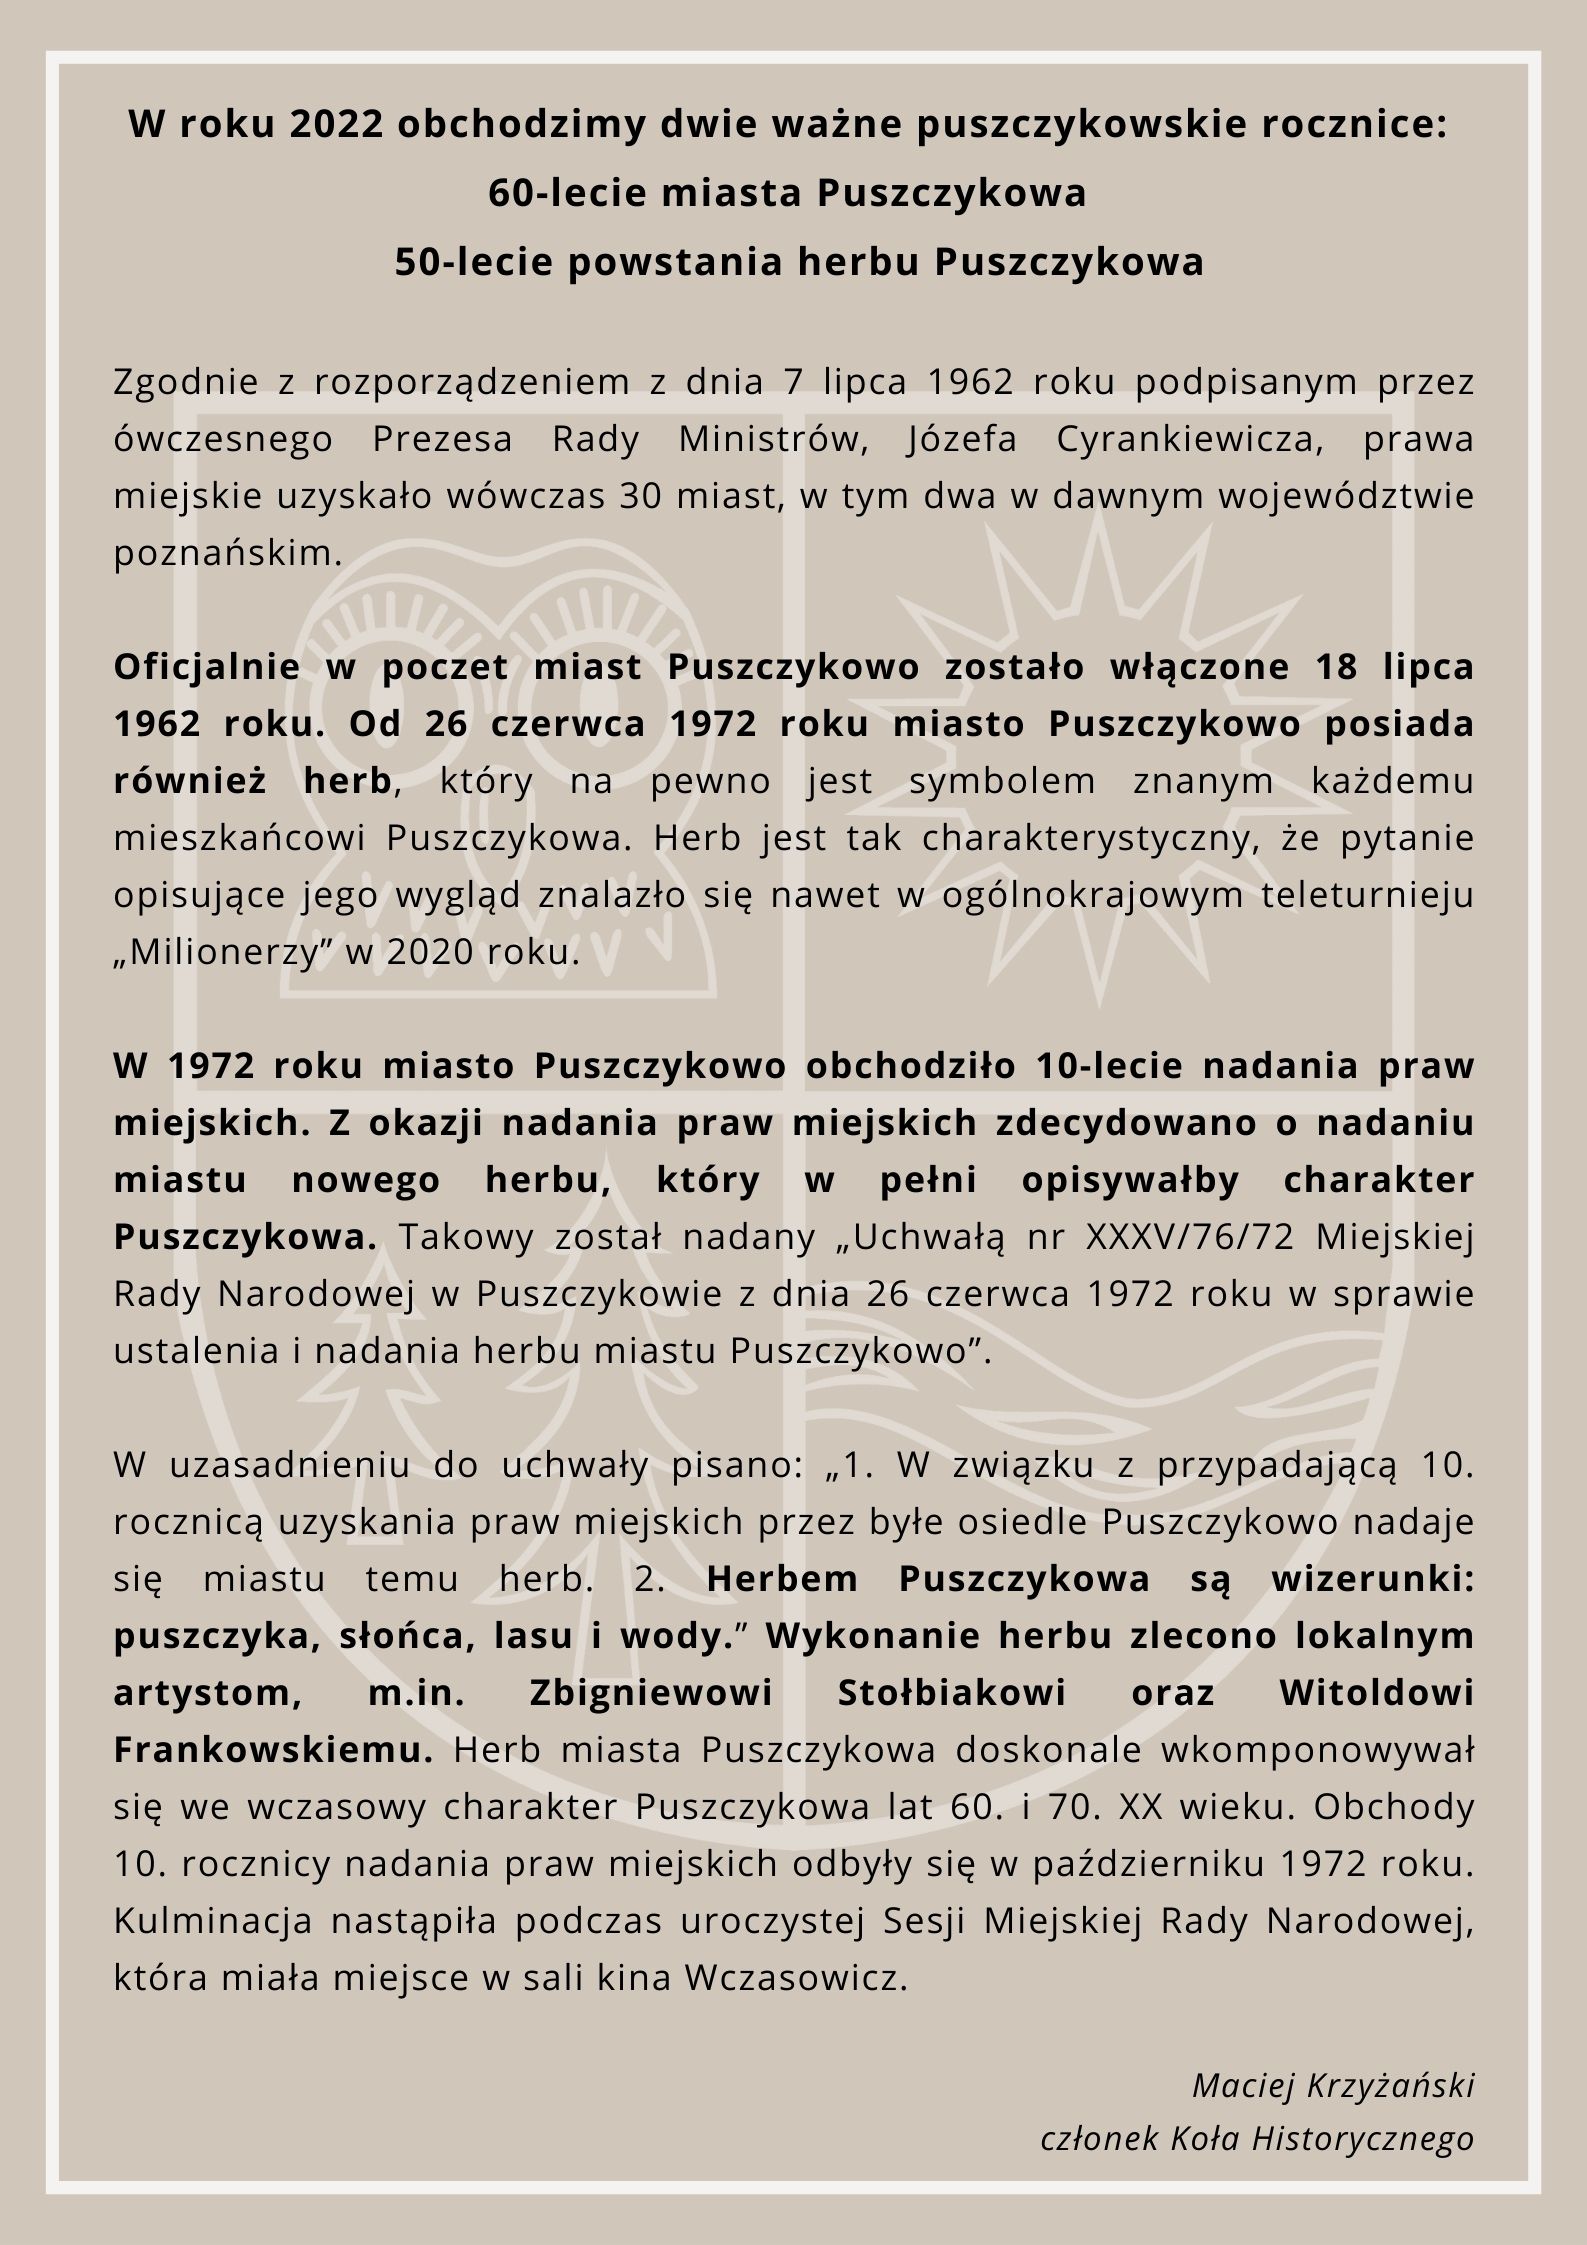 50-lecie powstania herbu Puszczykowa